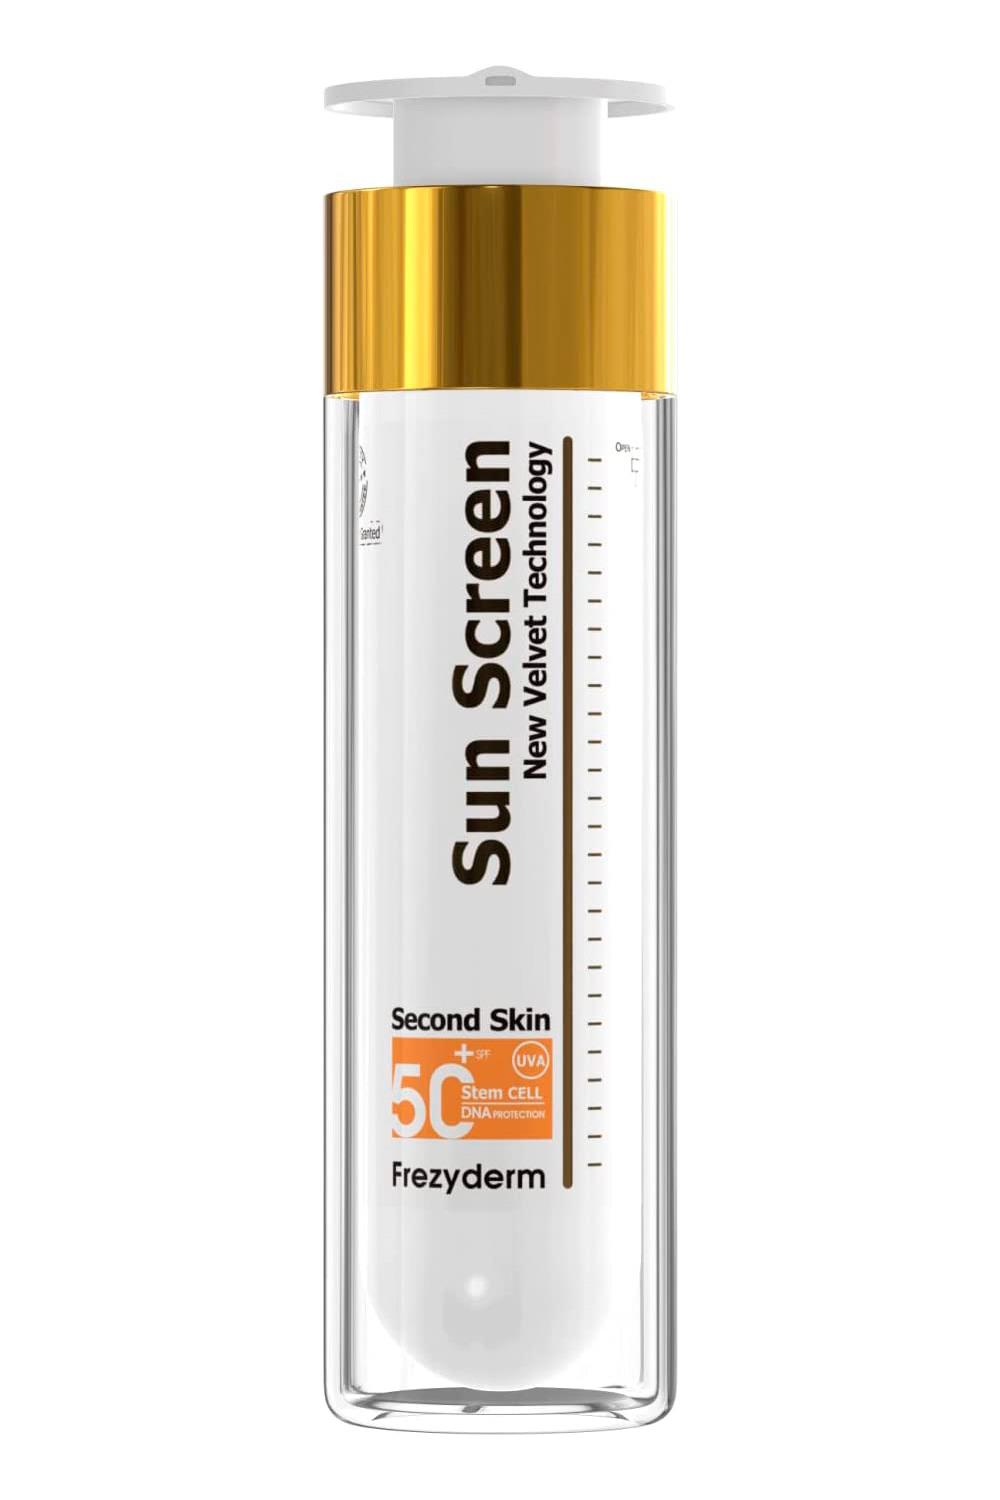 Filtro solar facial Sun Screen SPF 50, Frezyderm